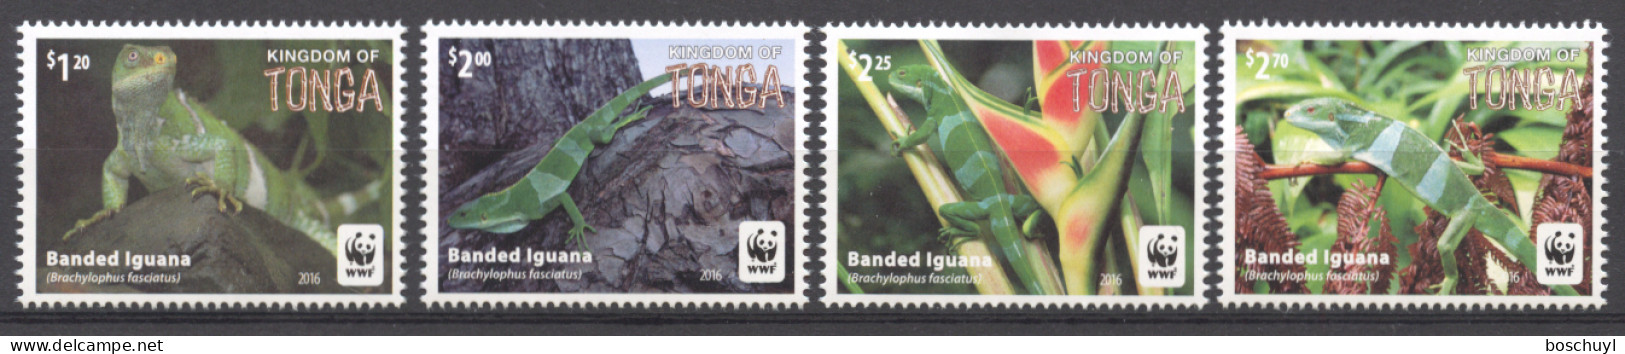 Tonga, 2016, Iguanas, Animals, WWF, World Wildlife Fund, MNH, Michel 2098-2101 - Tonga (1970-...)